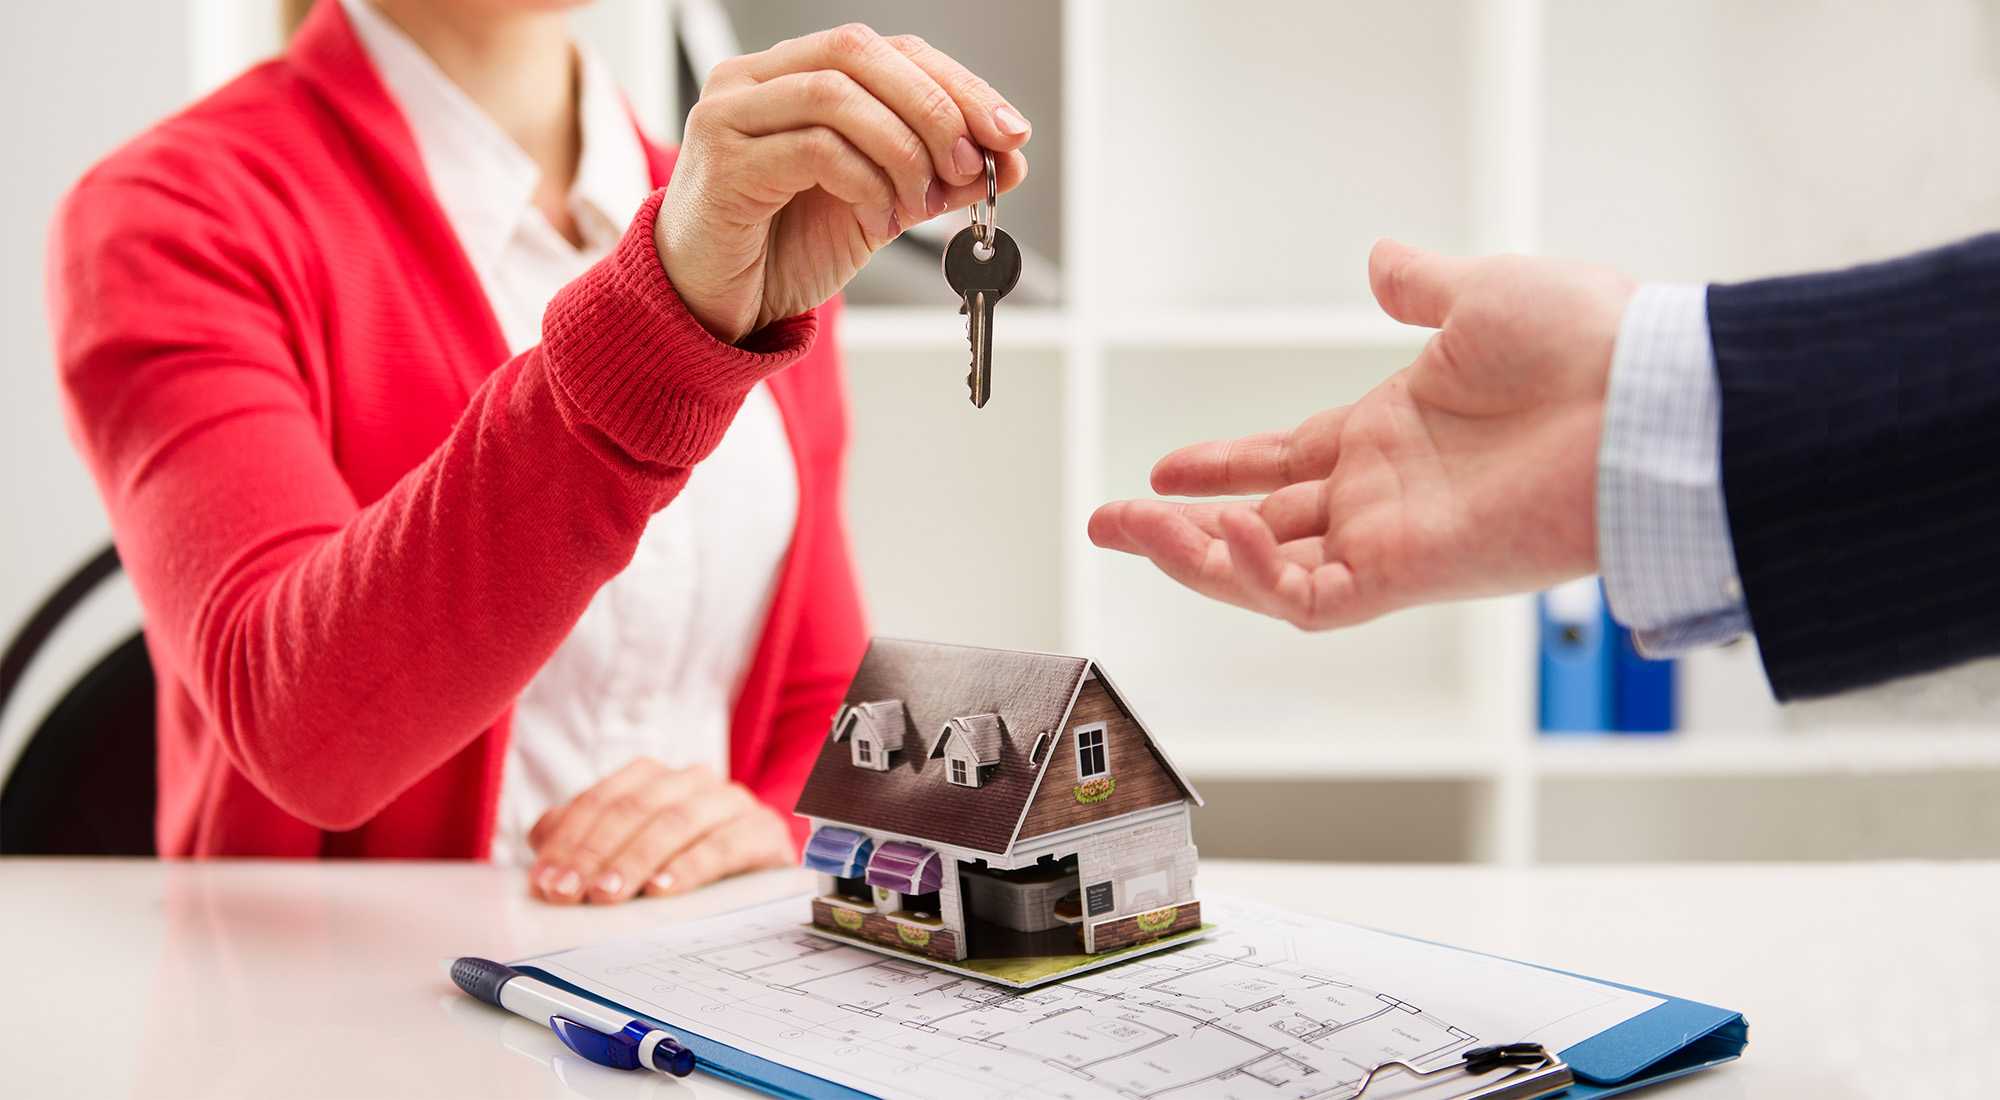 Аренда жилья через агентство недвижимости: как быстро и выгодно сдать/снять квартиру?